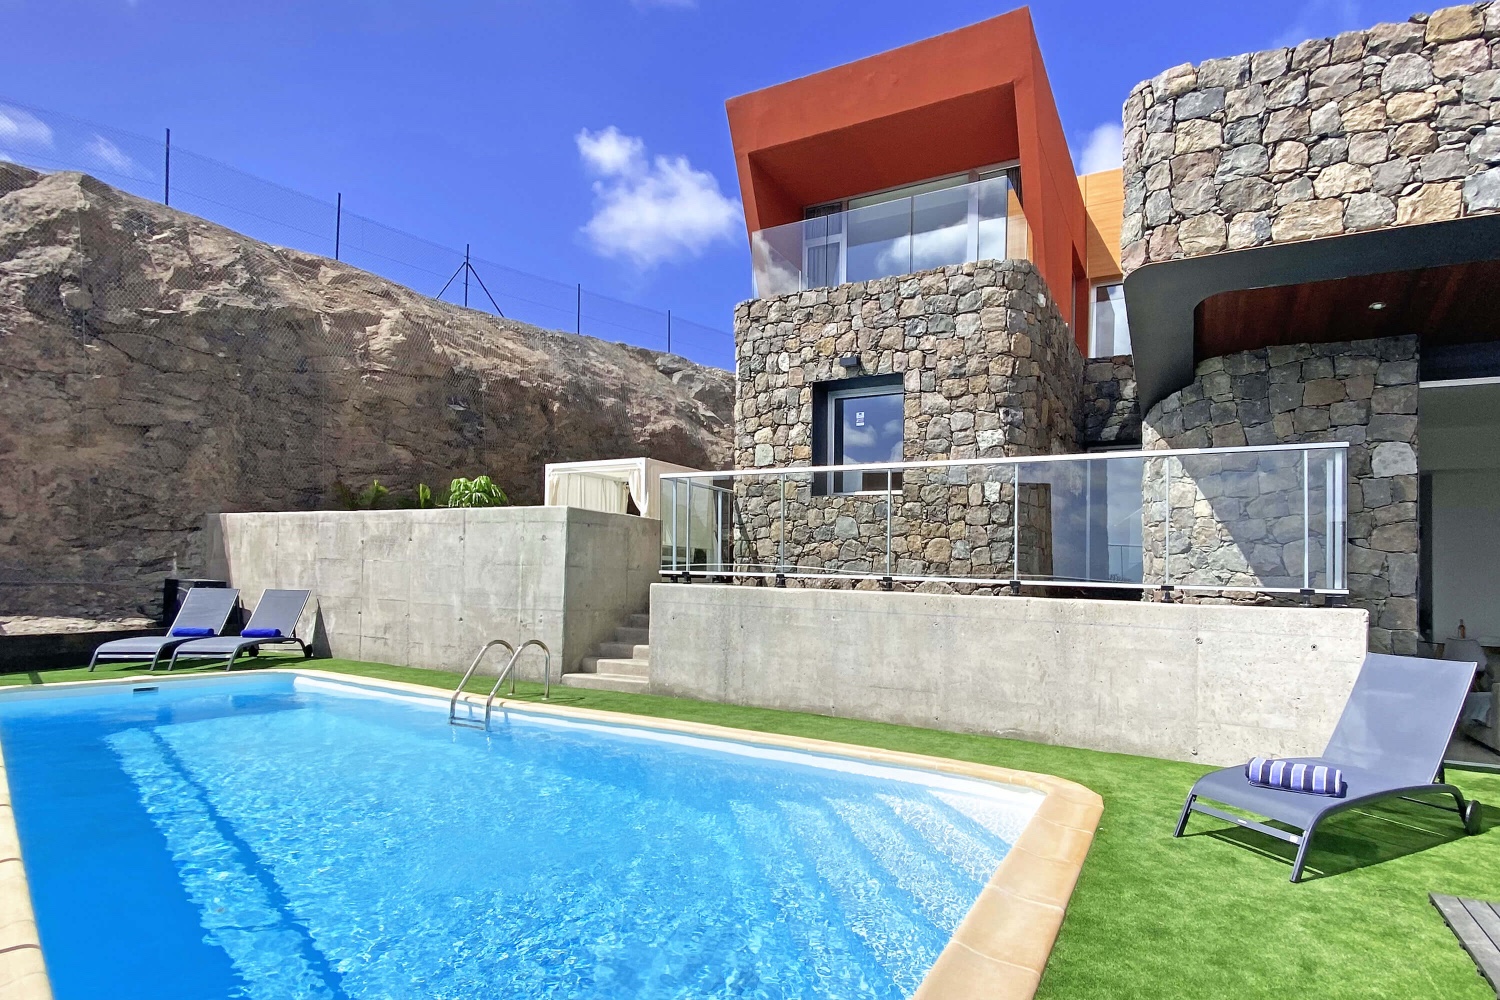 Dit elegante en moderne vakantiehuis biedt de beste voorwaarden voor een ontspannen vakantie in het zonnige zuiden van Gran Canaria met de mogelijkheid om thuis te werken of studeren.